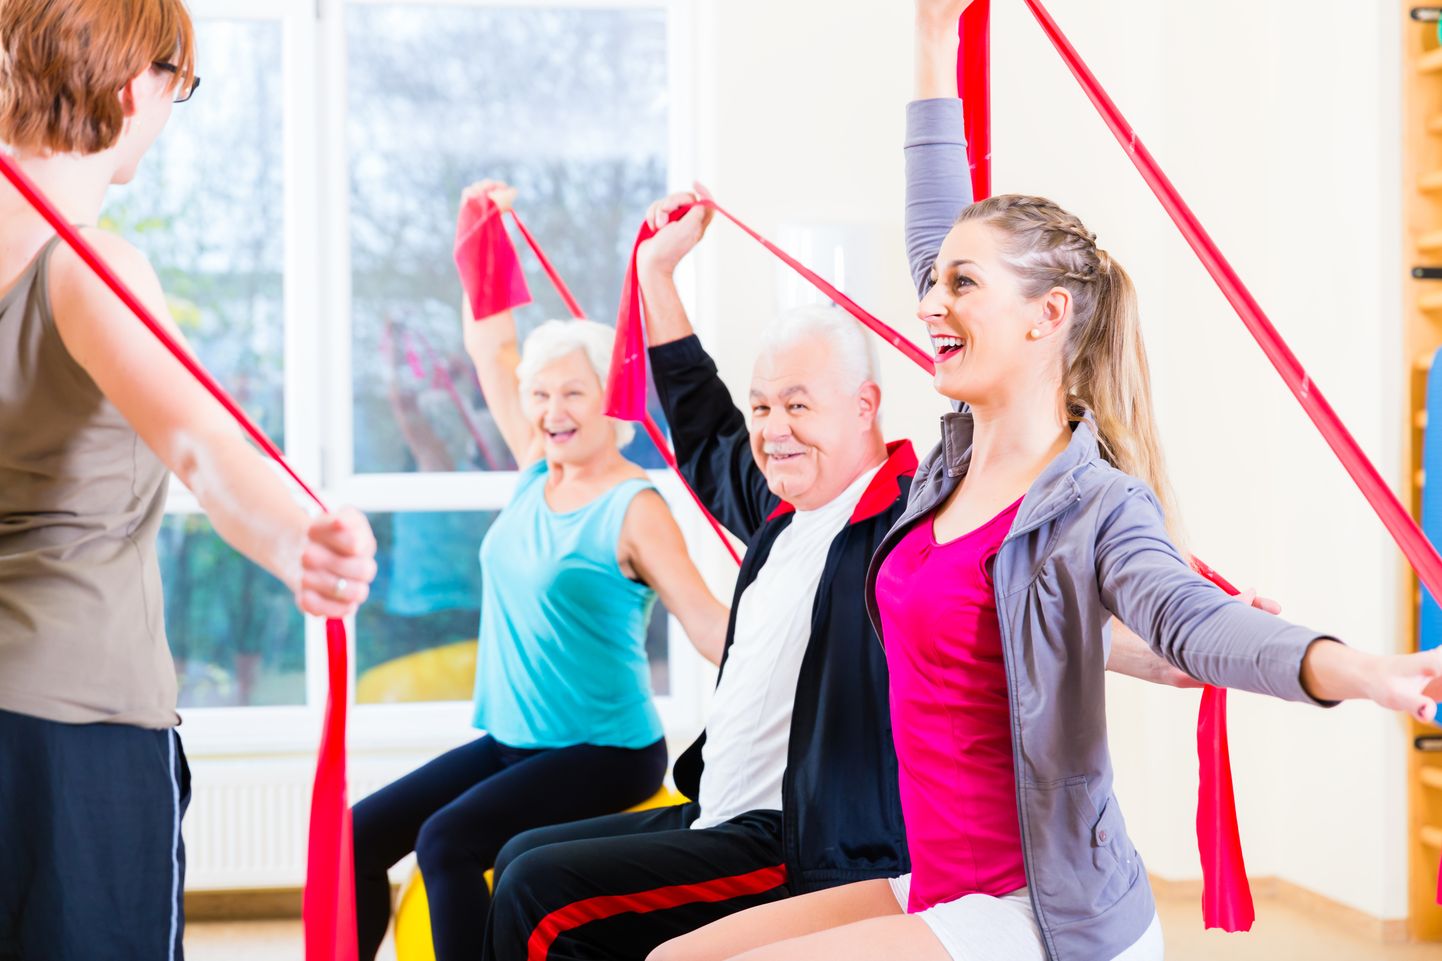 Füüsiline aktiivsus on ka kõrgemas eas oluline.